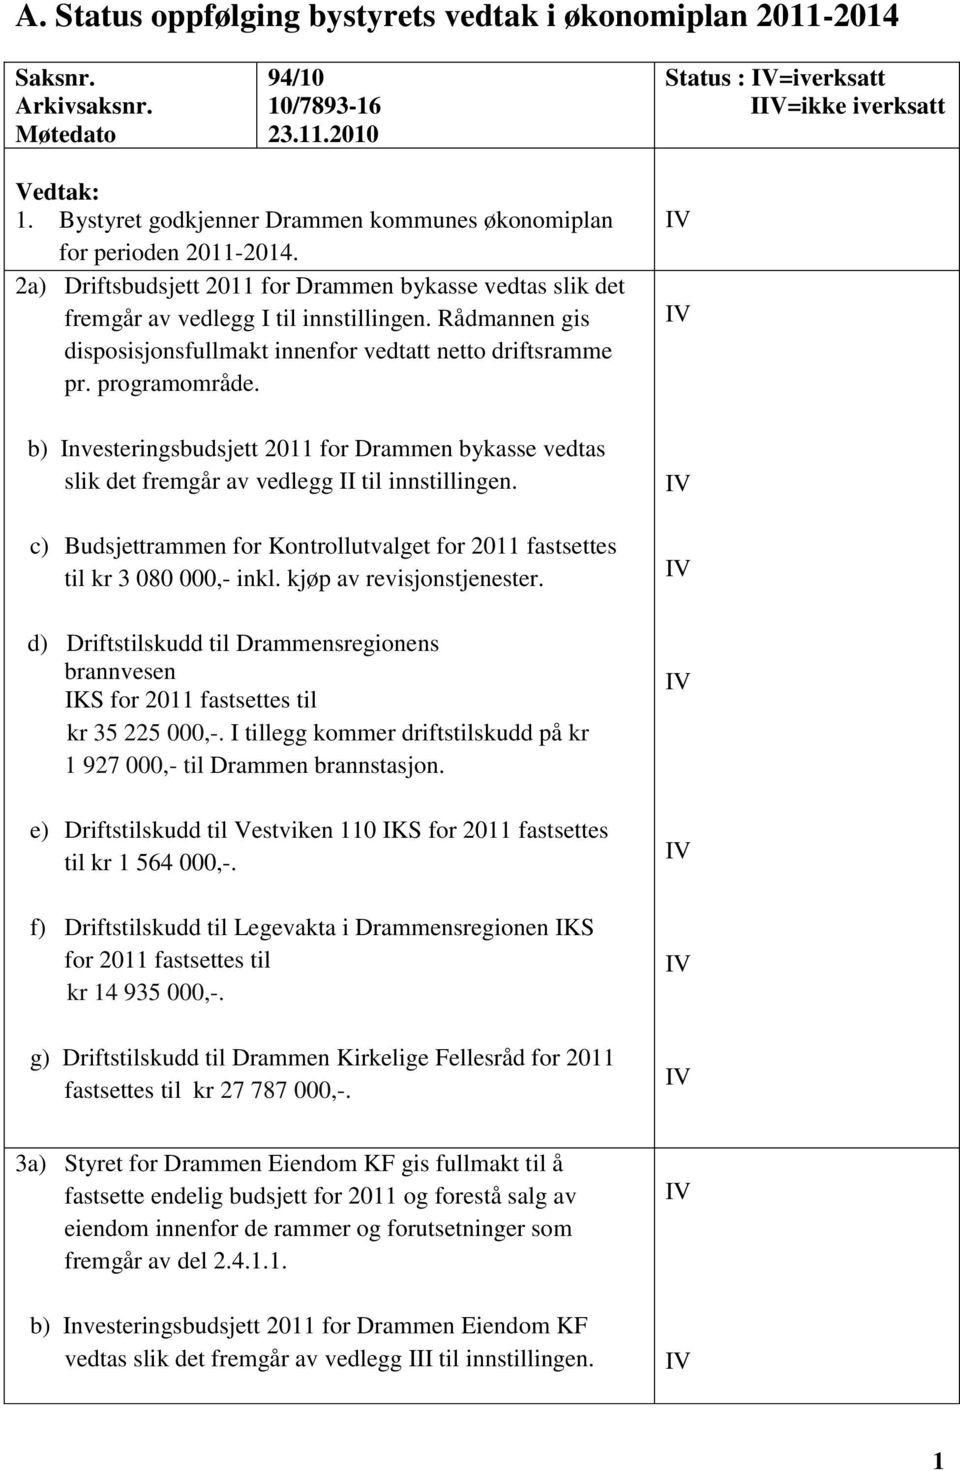 Rådmannen gis disposisjonsfullmakt innenfor vedtatt netto driftsramme pr. programområde. b) Investeringsbudsjett 2011 for Drammen bykasse vedtas slik det fremgår av vedlegg II til innstillingen.